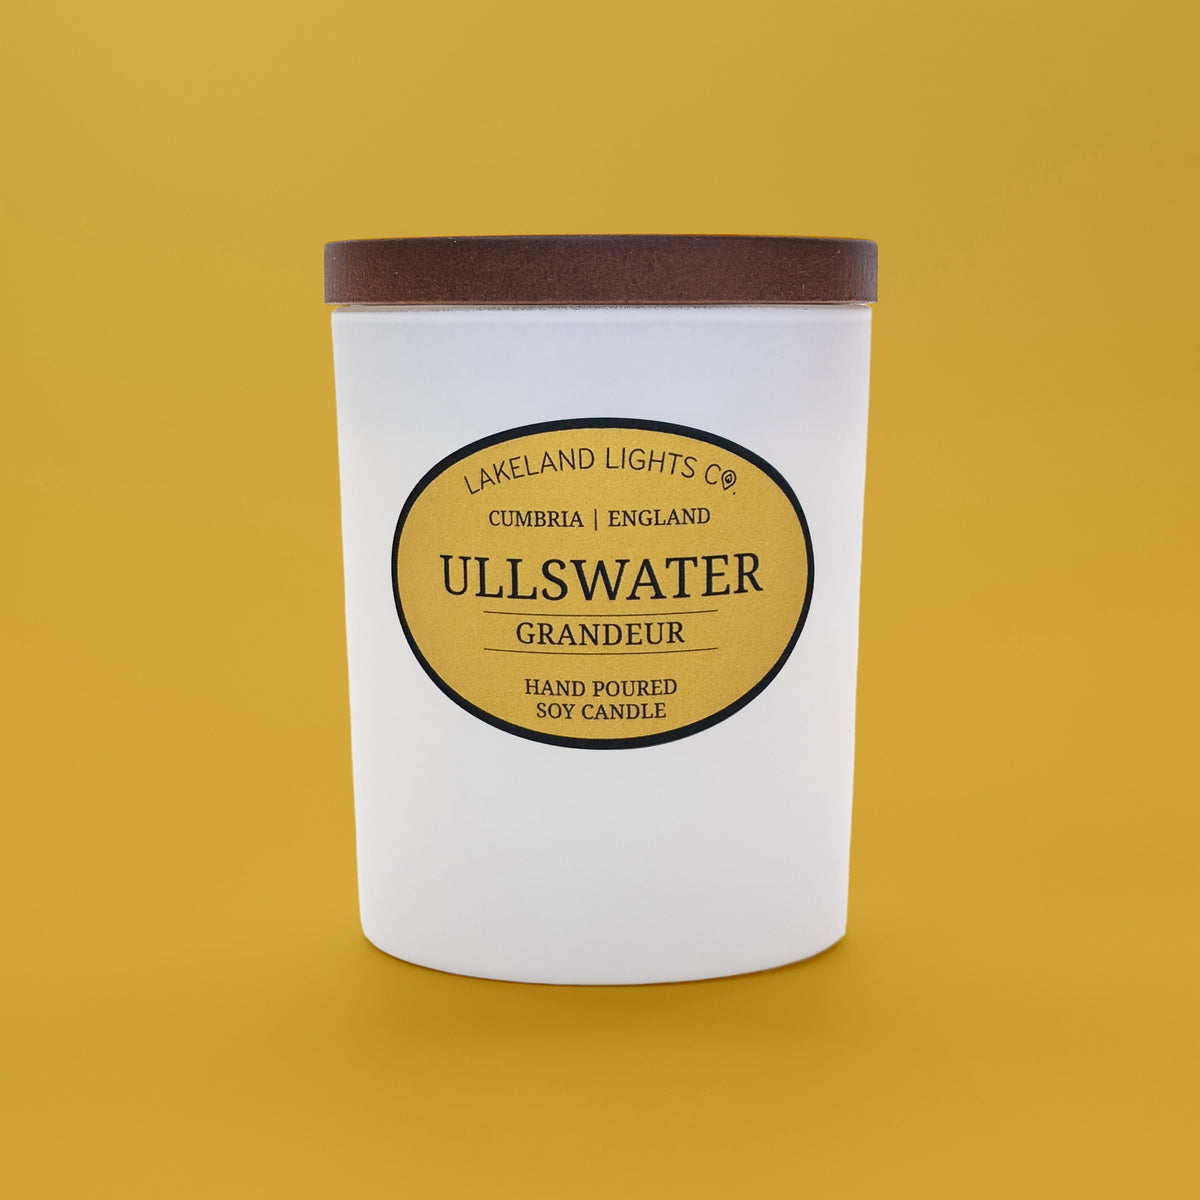 Ullswater